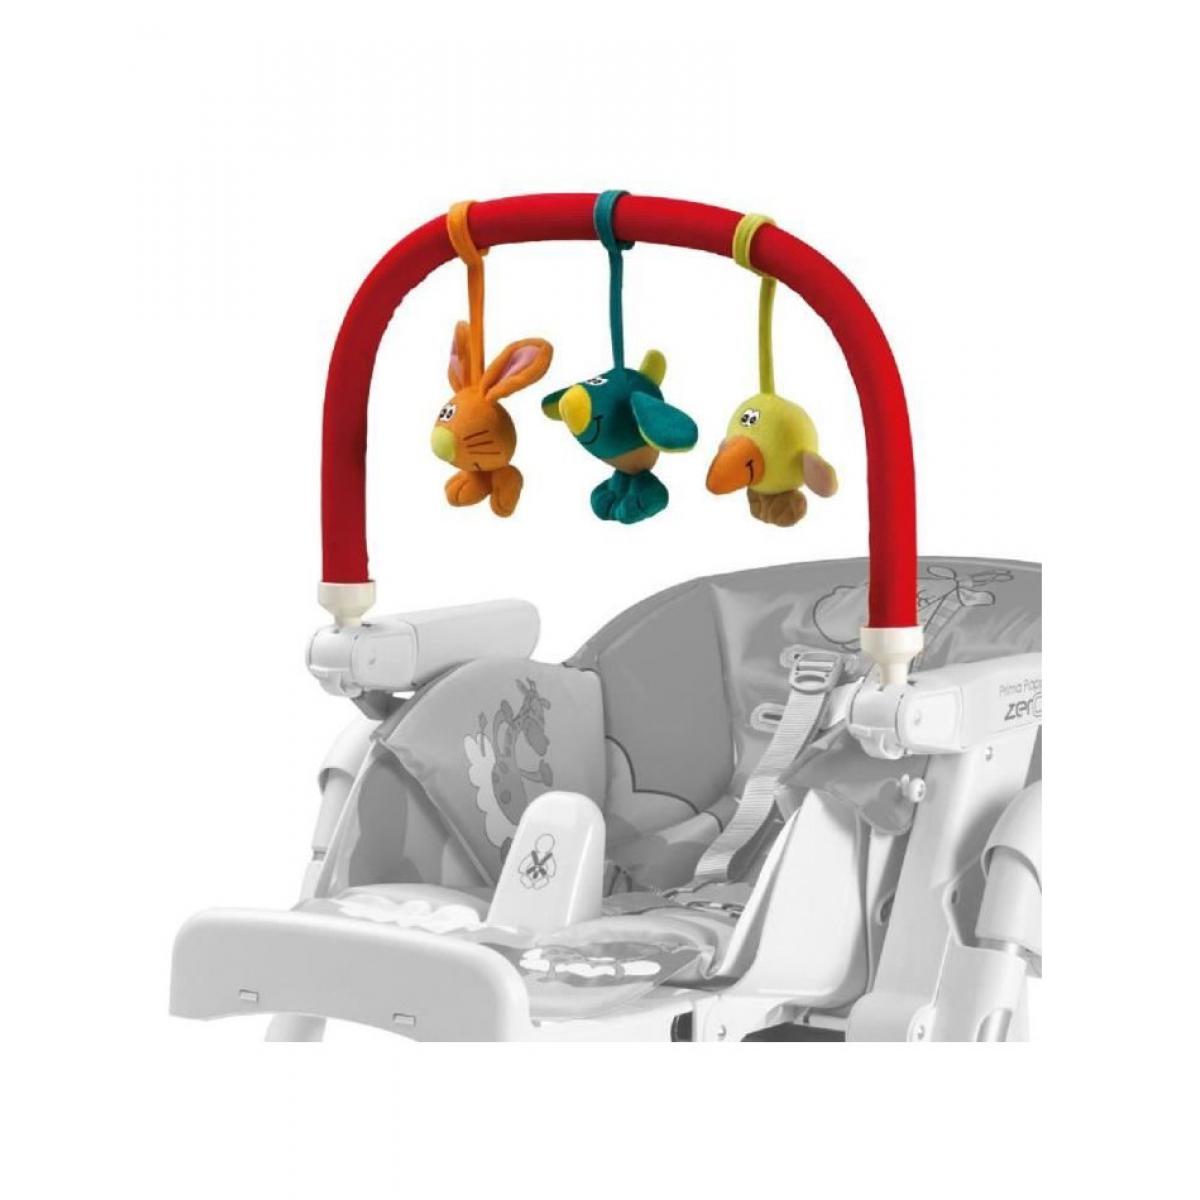 Peg Perego - PEG PEREGO Arche de jeux pour chaise haute - Multicolore - Jeux d'éveil